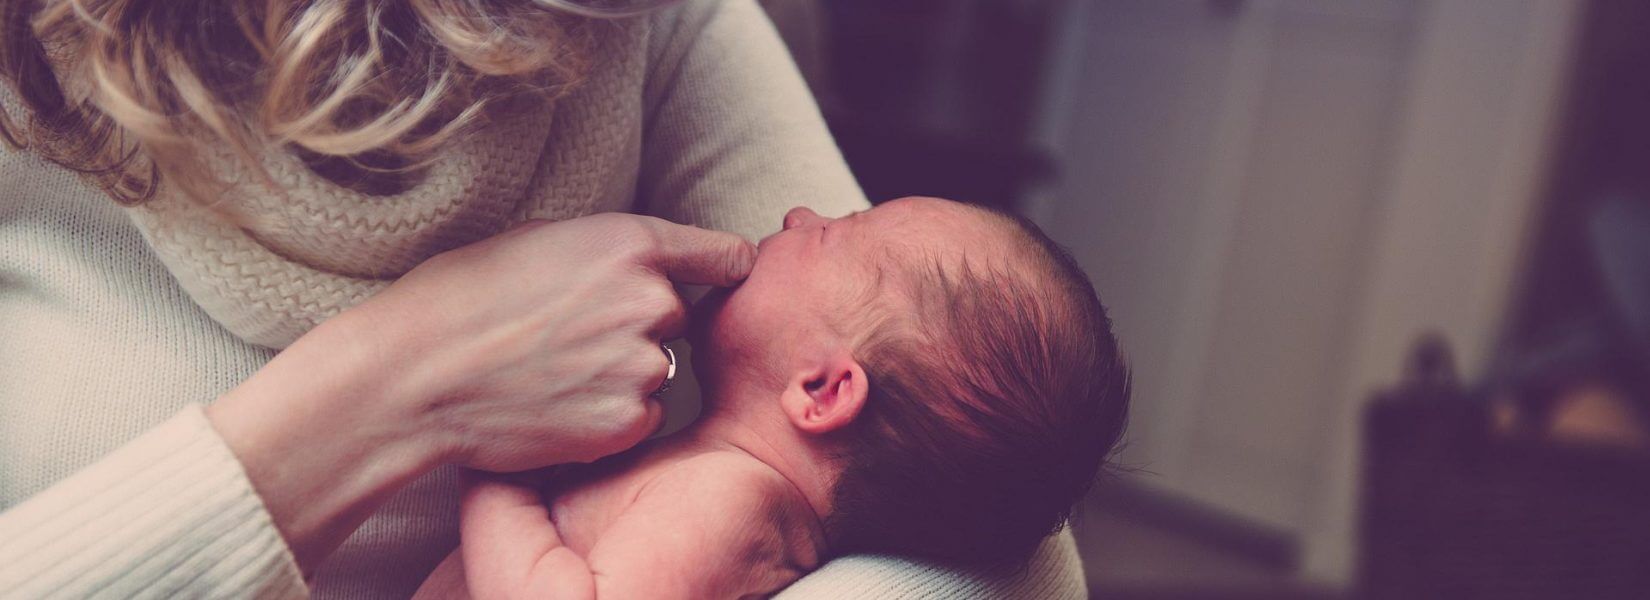 Είστε νέες μητέρες; 12 απαντήσεις  για το επίδομα μητρότητας